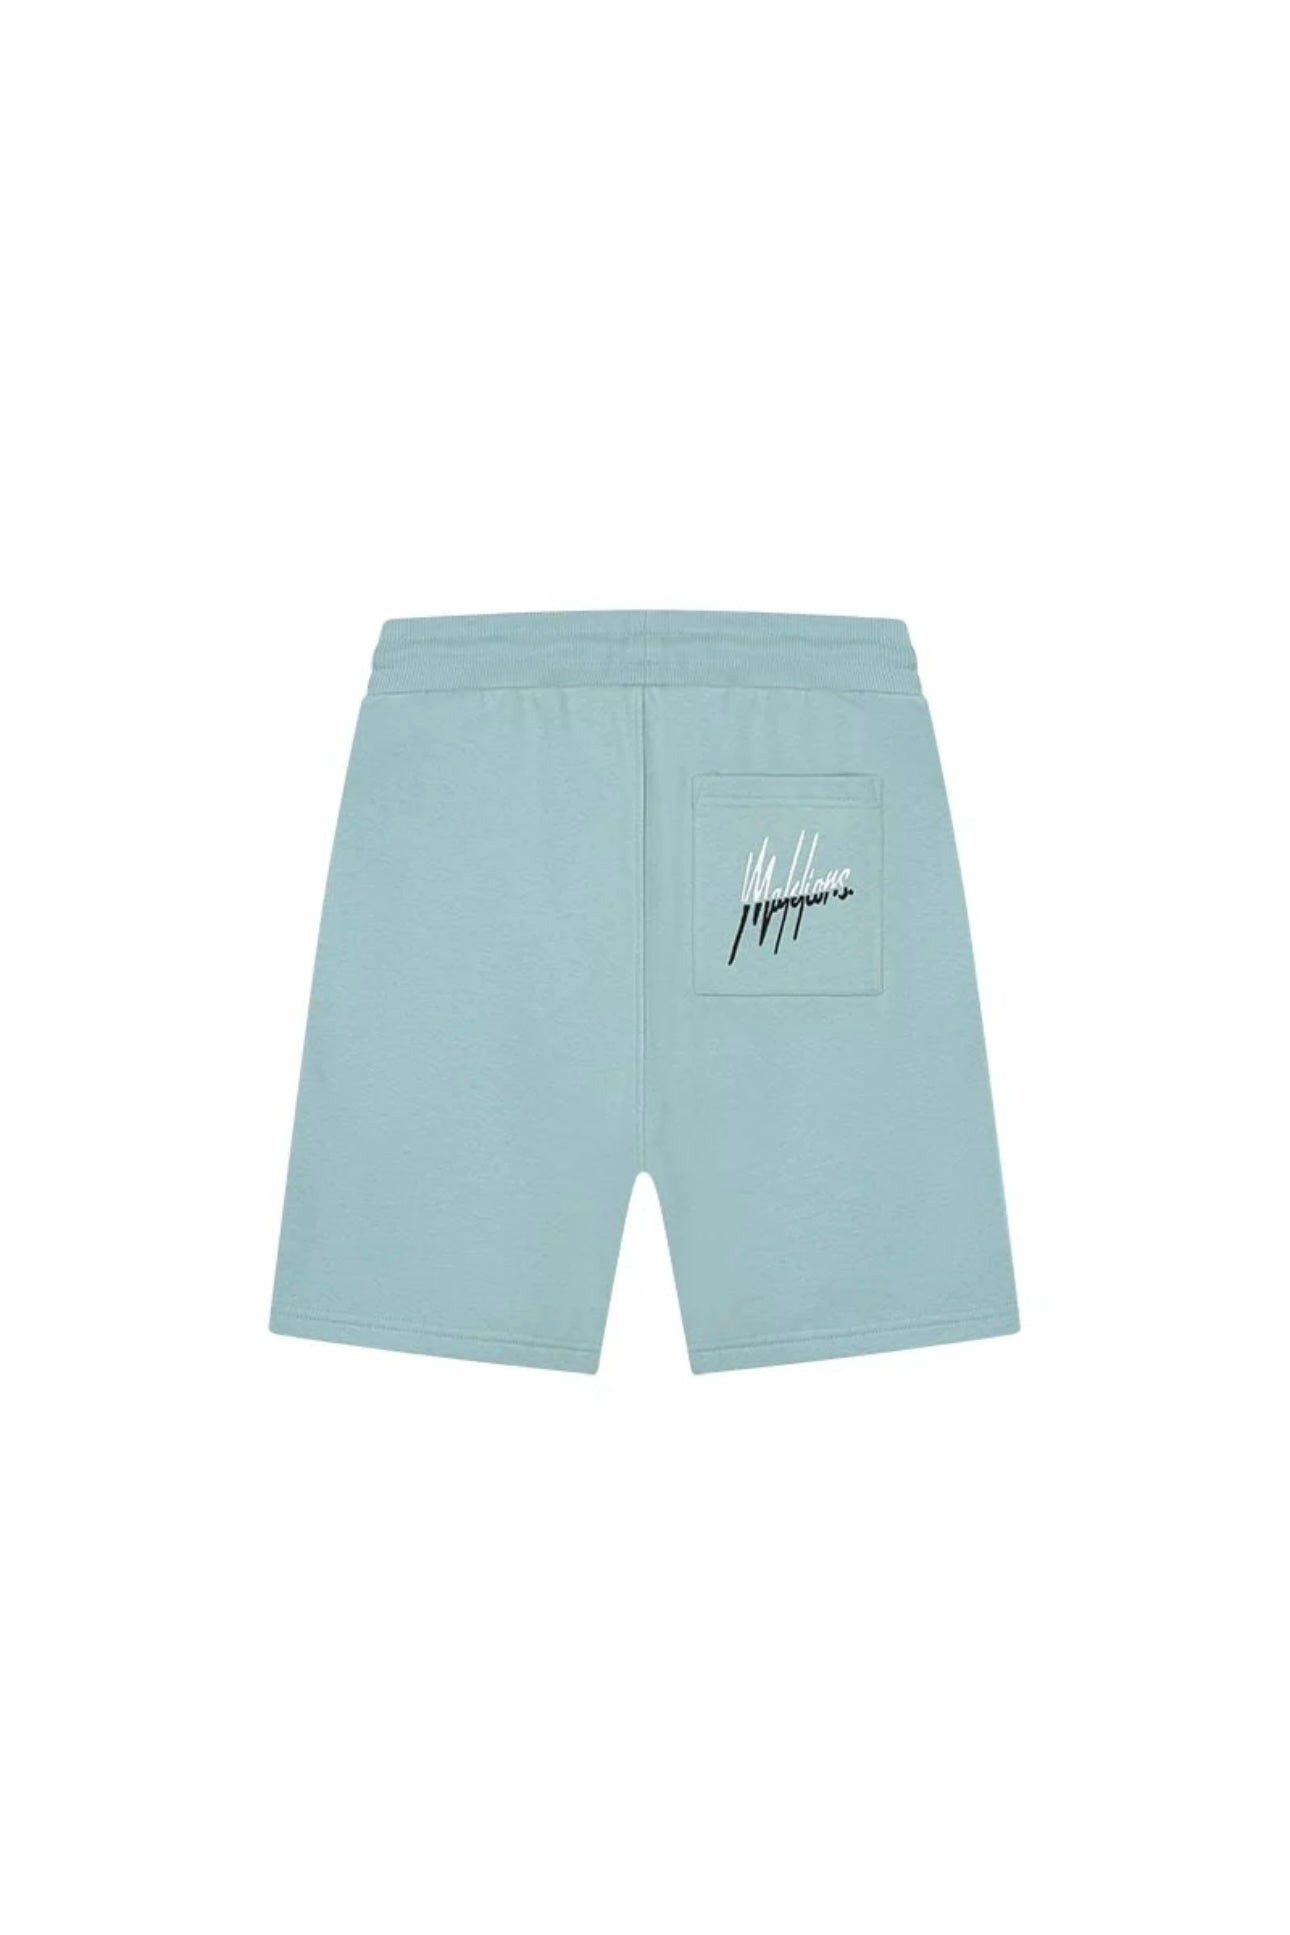 Malelions men split shorts - light blue/off white